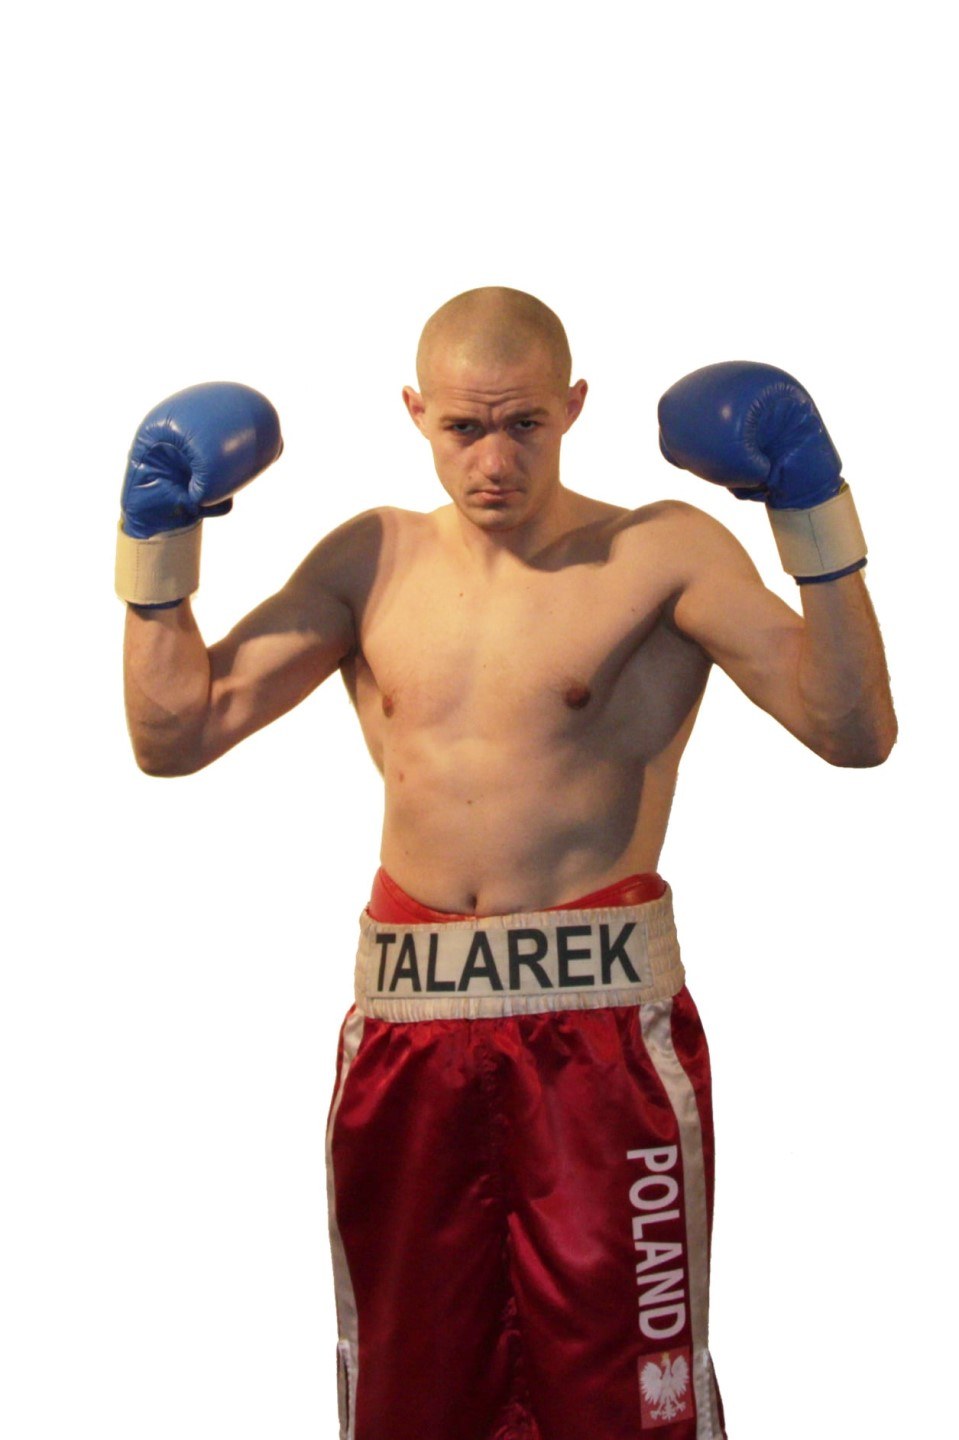 Robert Talarek